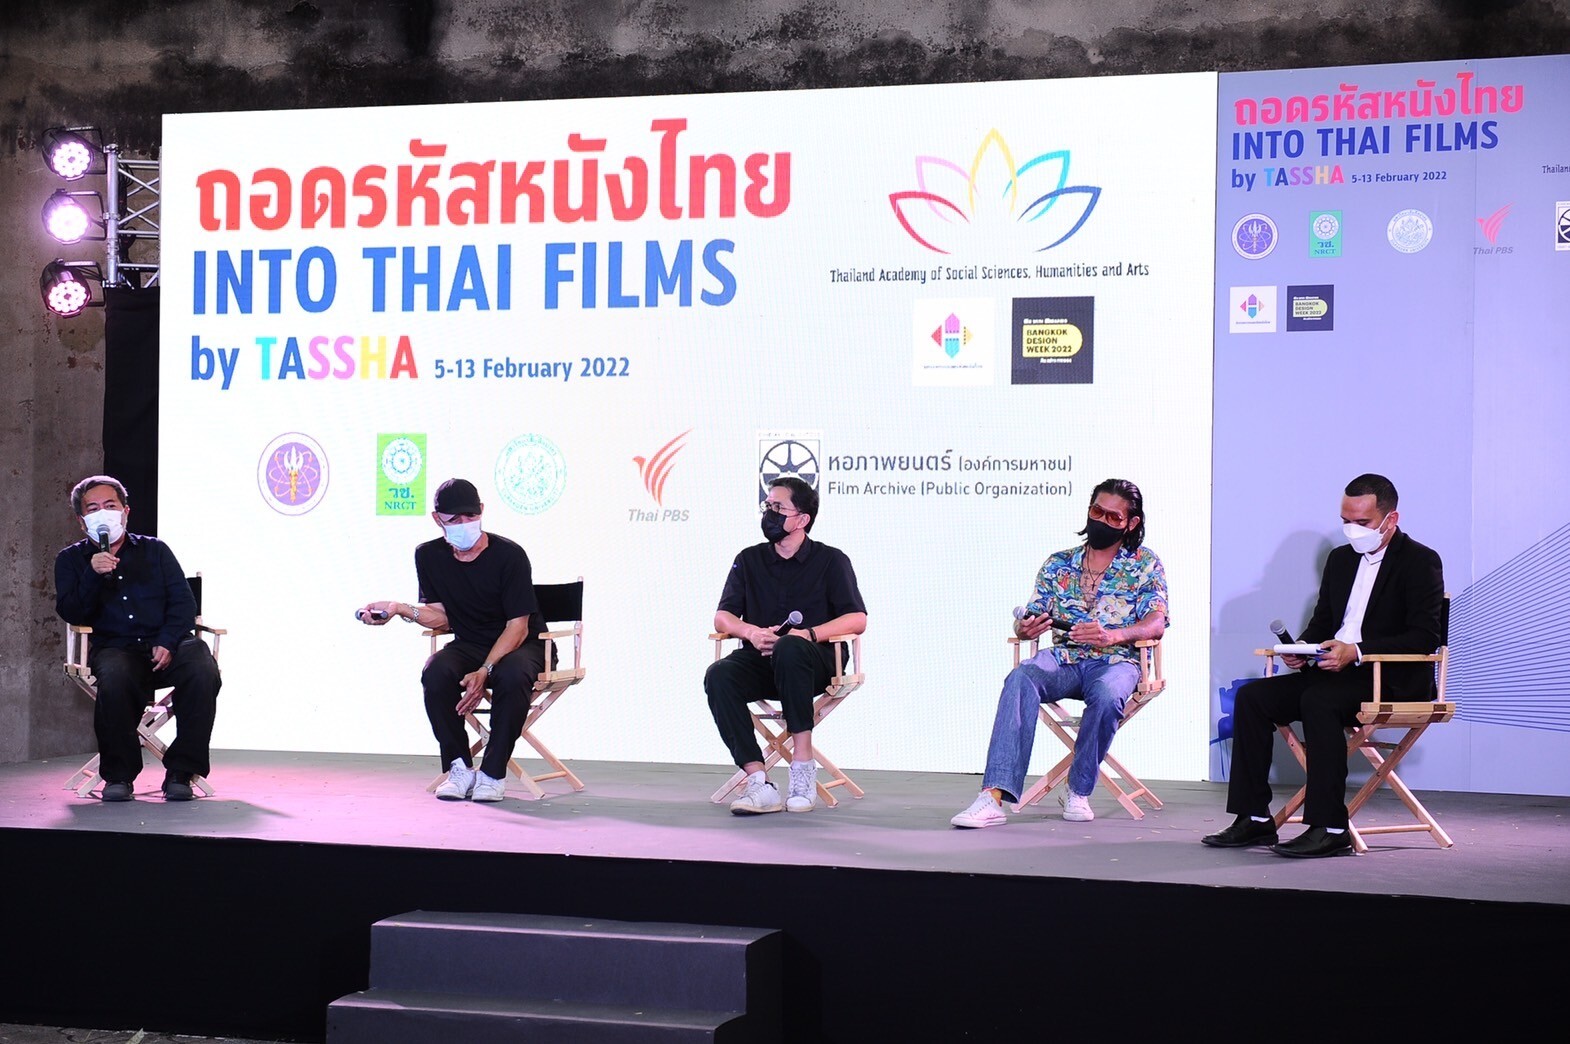 นิทรรศการภาพยนตร์ "Into Thai Films by TASSHA ถอดรหัสหนังไทย" ถูกจัดทำขึ้นโดย "ธัชชา"ภายใต้โครงการวิจัย อว. พารู้ พารัก รากเหง้าแผ่นดินไทย